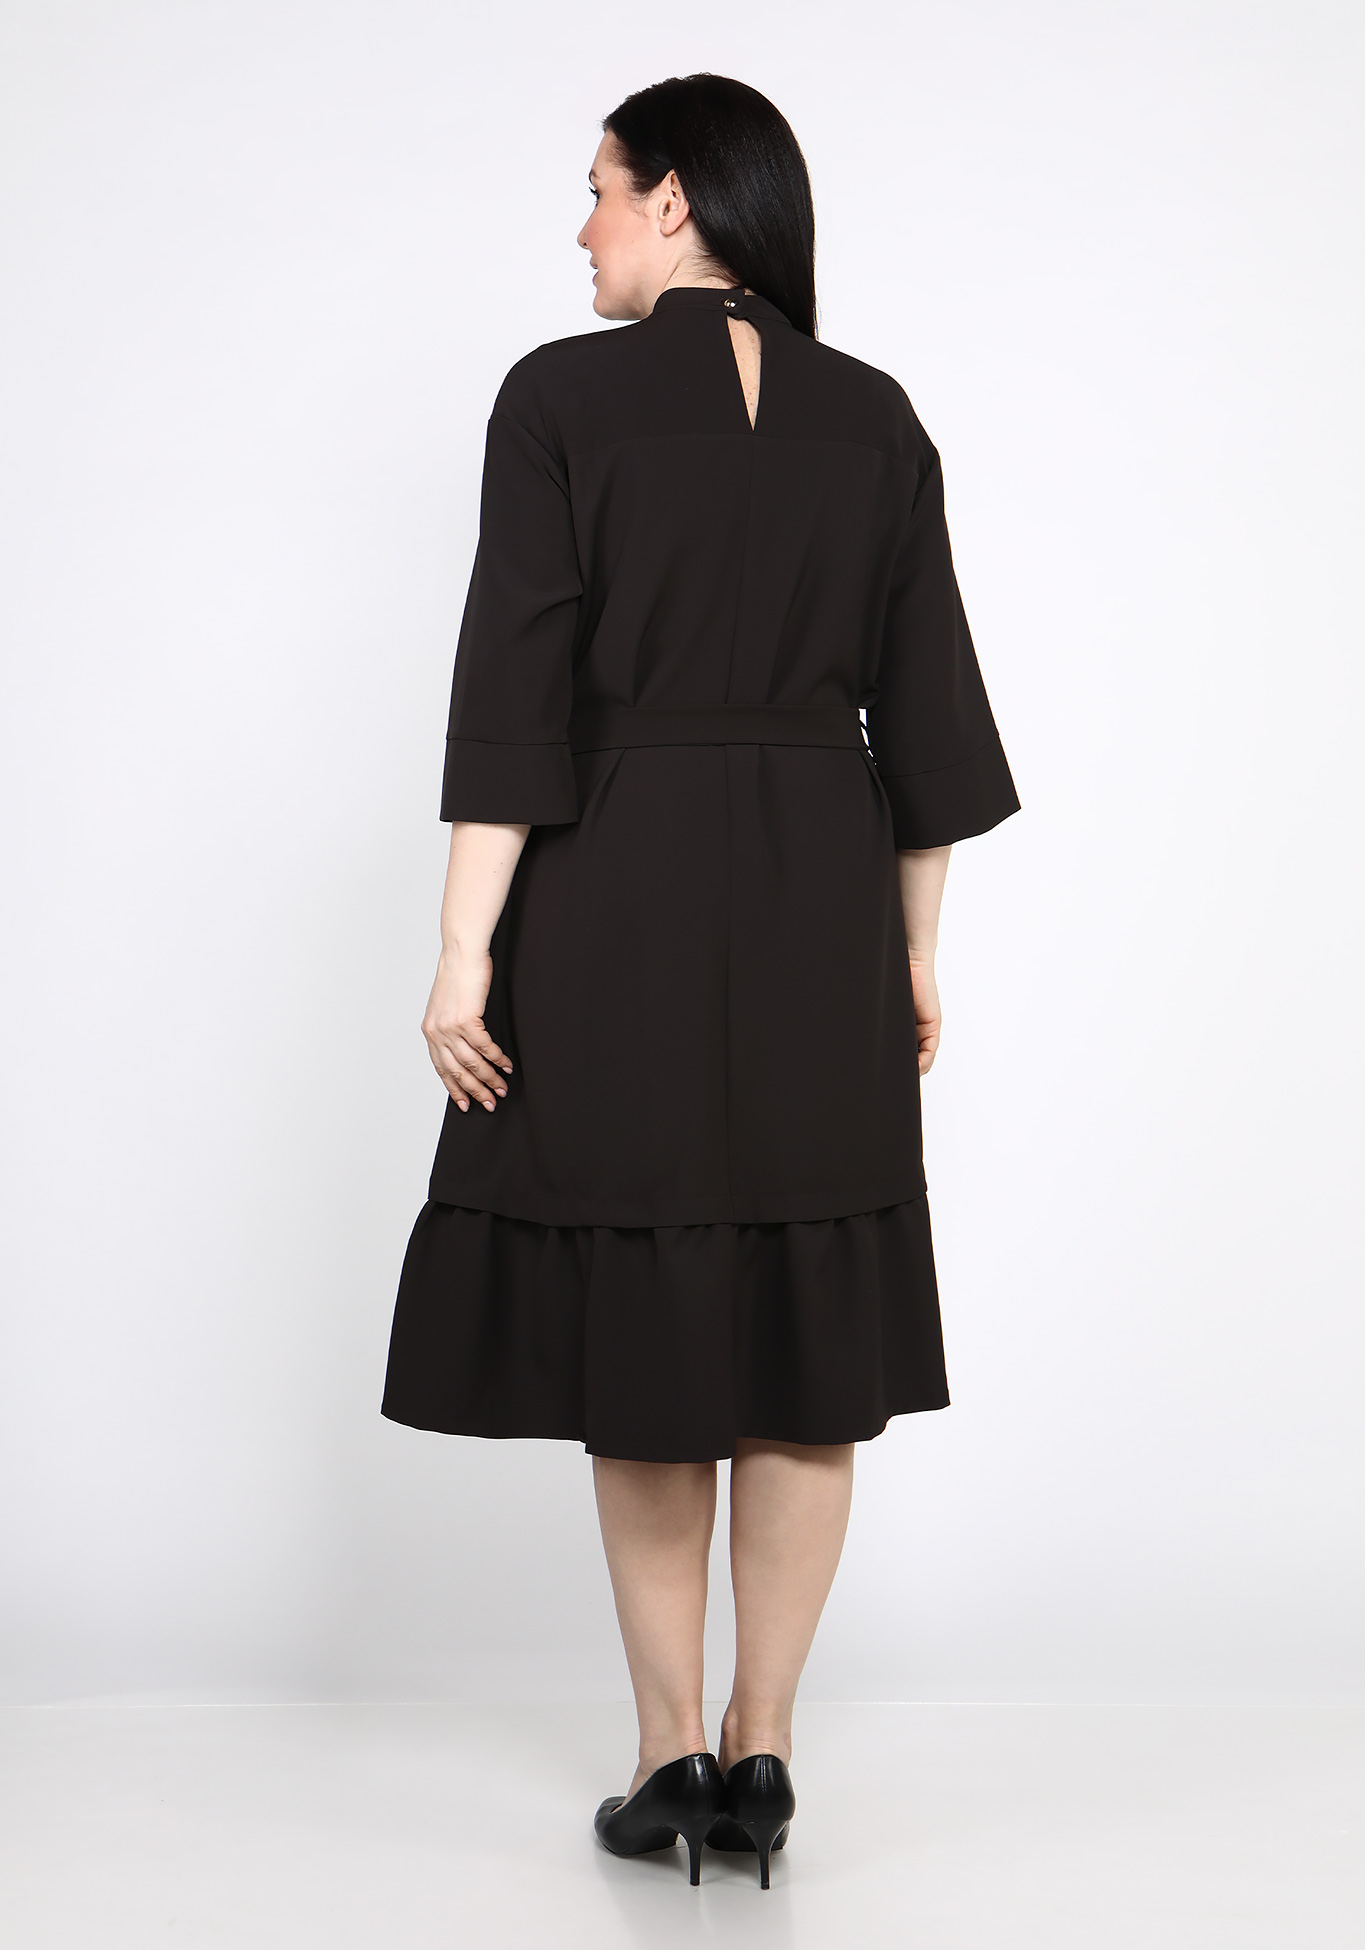 Платье свободного кроя с воланом GalaGrosso, размер 50, цвет темно-коричневый - фото 3